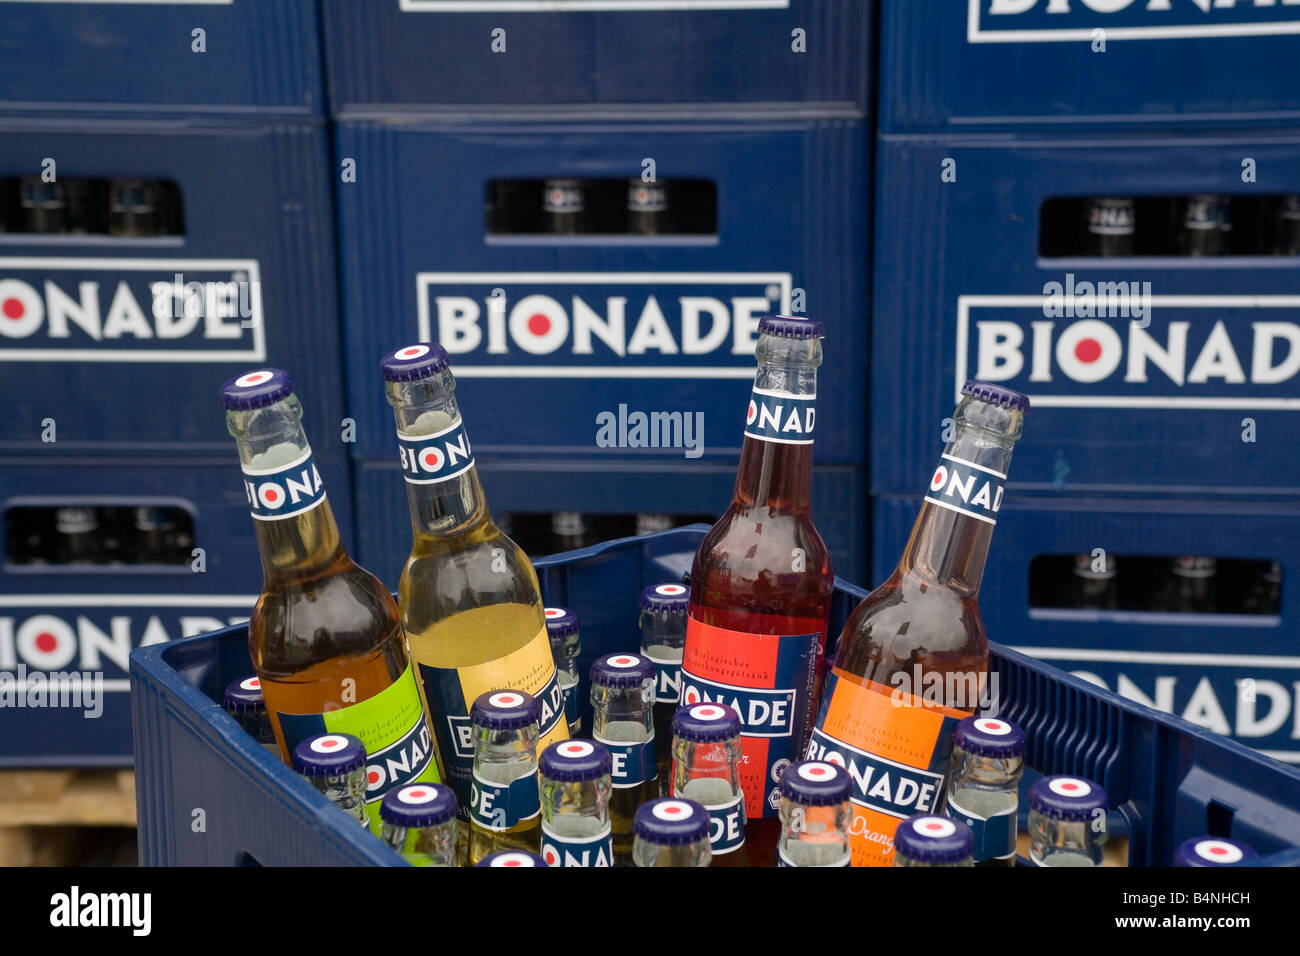 BIONADE GmbH la producción biológica de la bebida sin alcohol Bionade Foto de stock